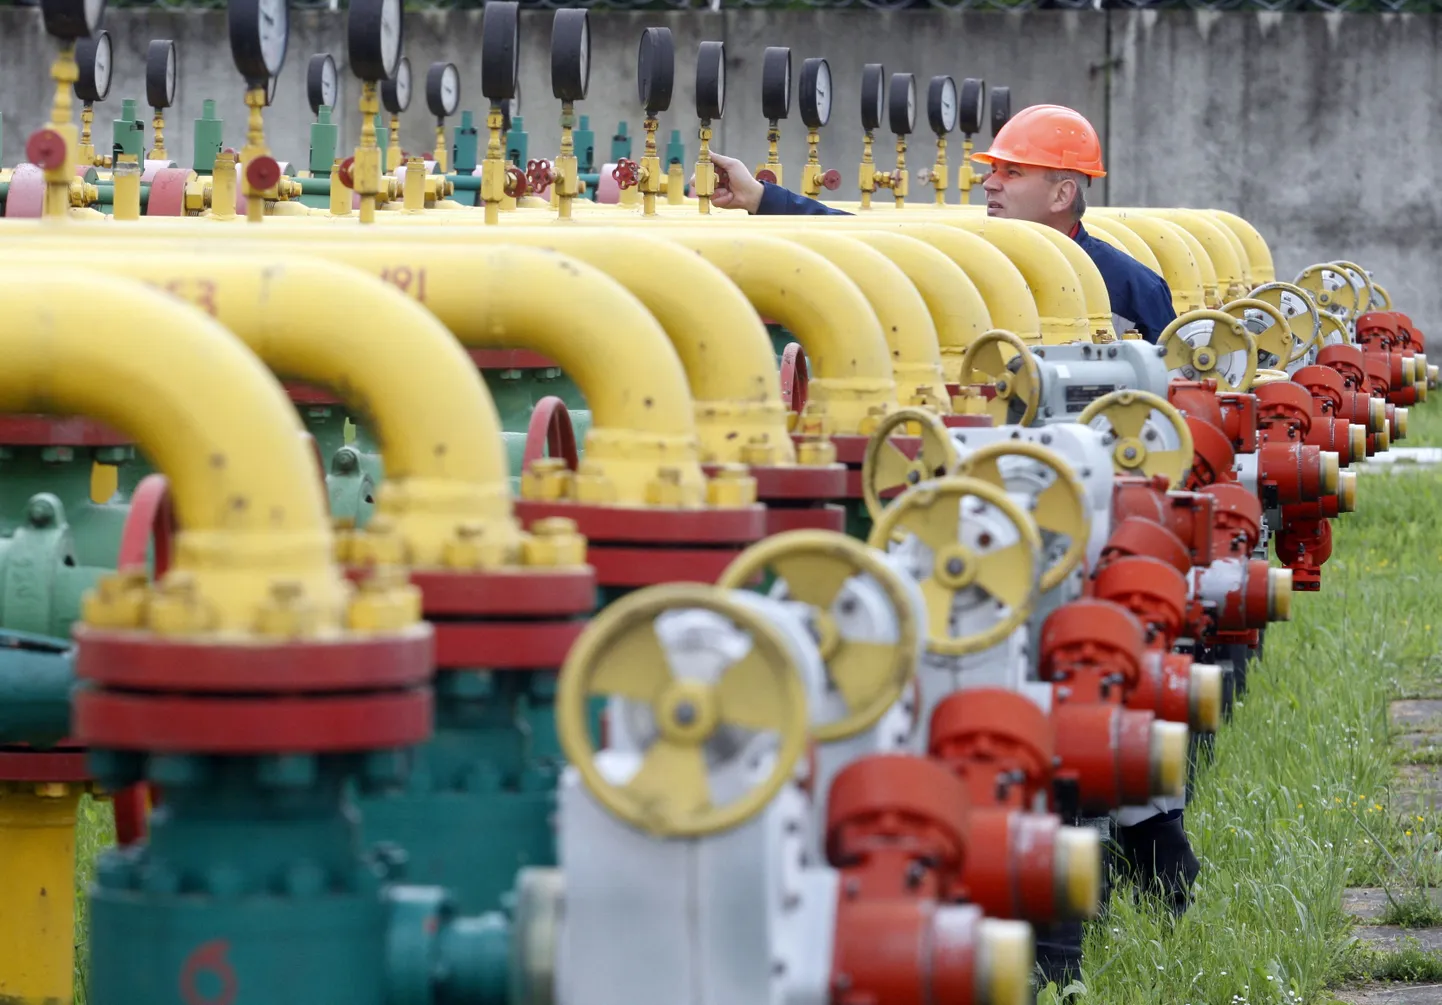 Töötaja 28. mail 2015. Lvivi lähistel Strõis Dašava gaasihoidla seadmeid kontrollimas.